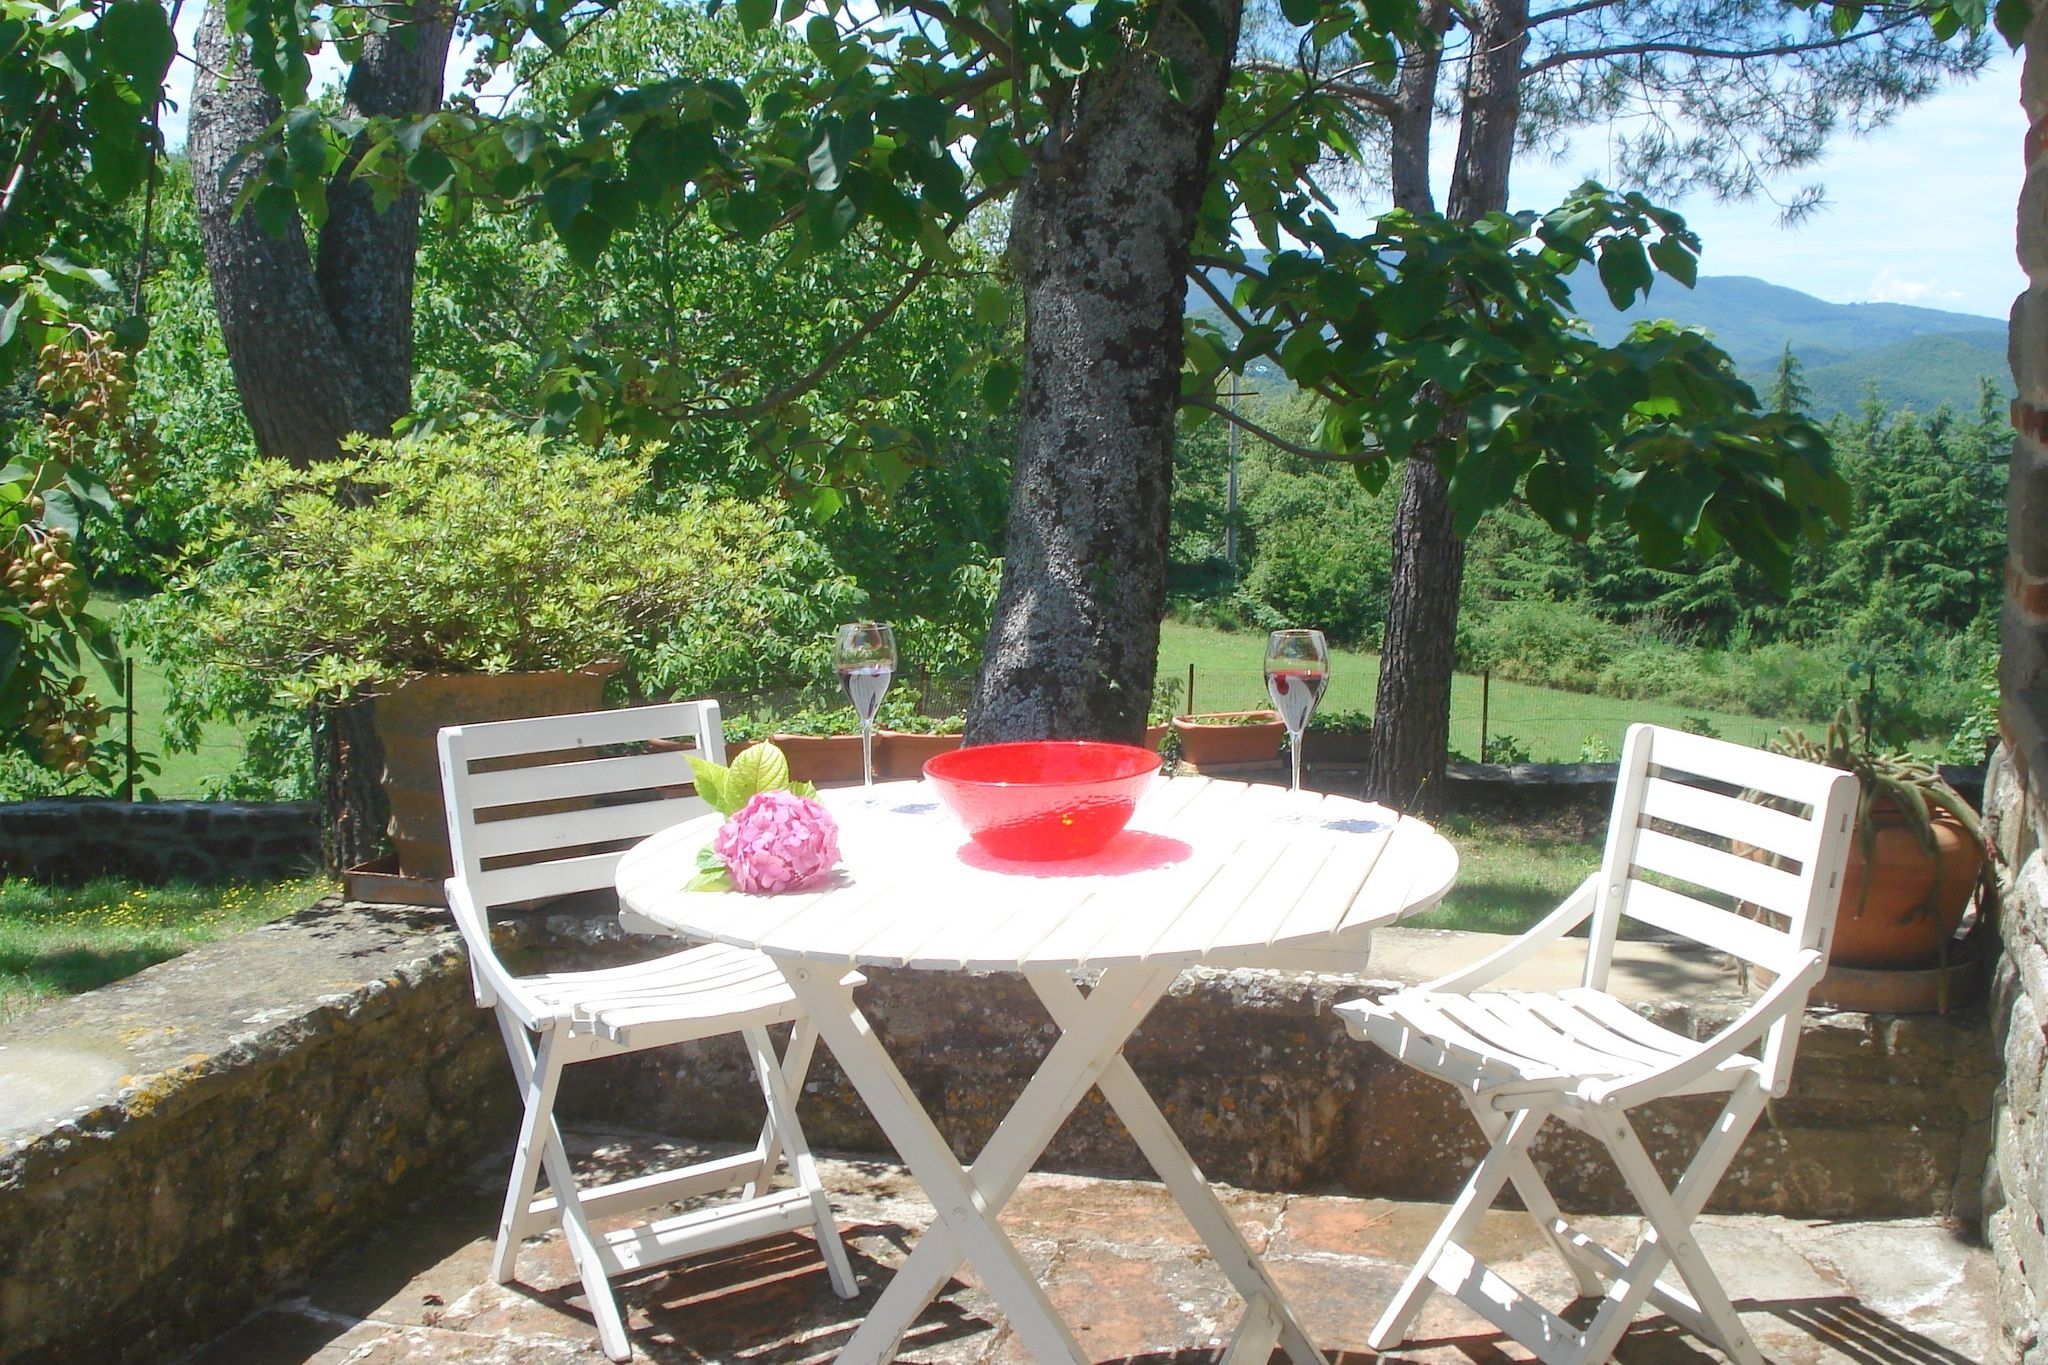 Maison de vacances rurale à Borgo San Lorenzo. Jardin privé